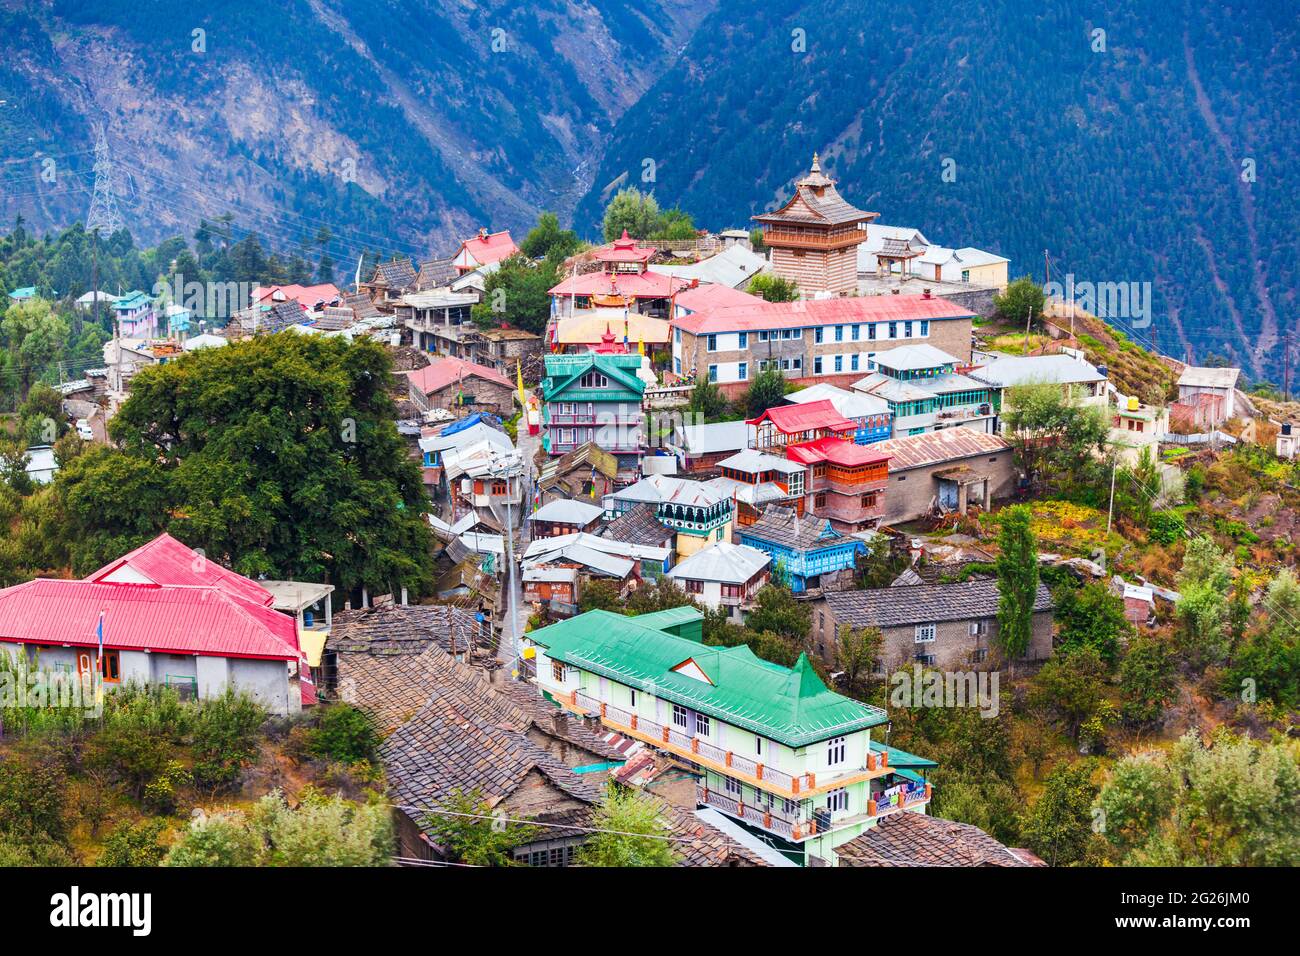 Les montagnes de kalpa et Kinnaur Kailash offrent une vue panoramique. Kalpa est une petite ville de la vallée de la rivière Sutlej, Himachal Pradesh en Inde Banque D'Images